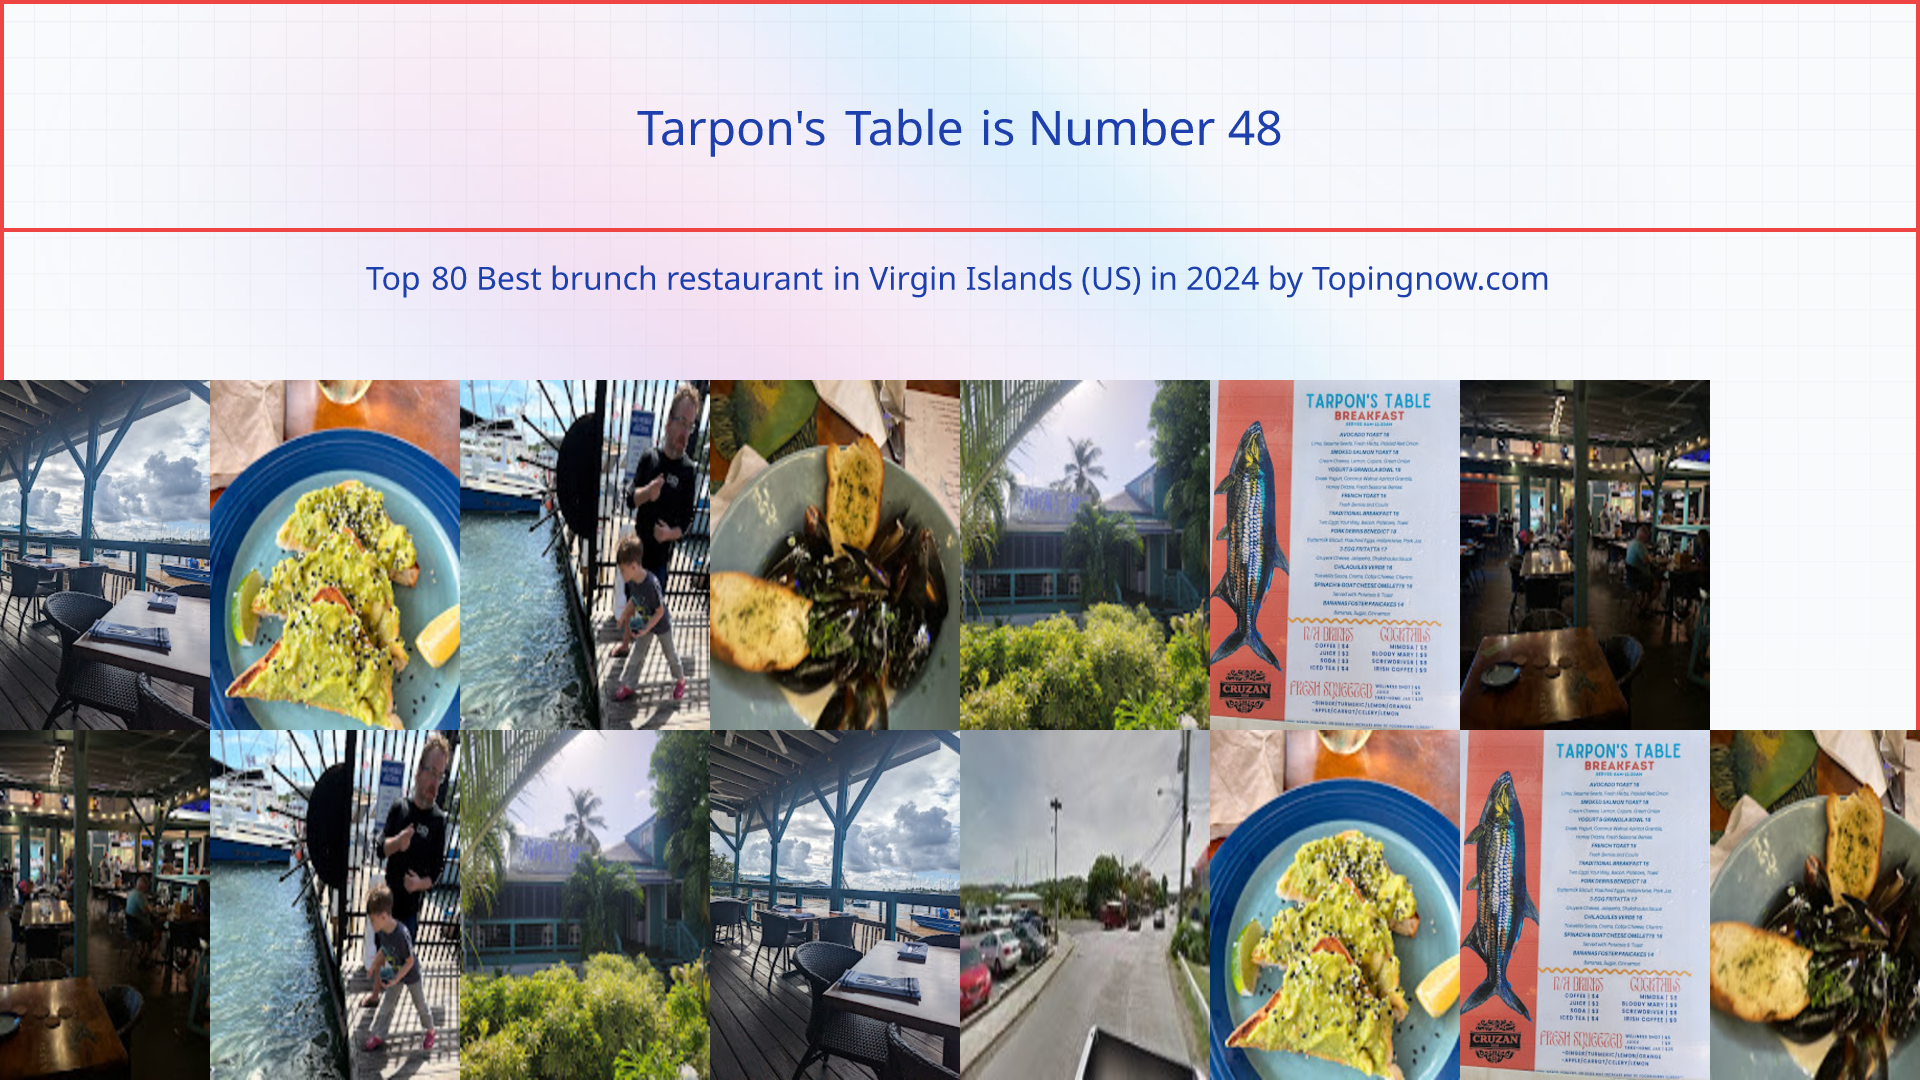 Tarpon's Table: Top 80 Best brunch restaurant in Virgin Islands (US) in 2024